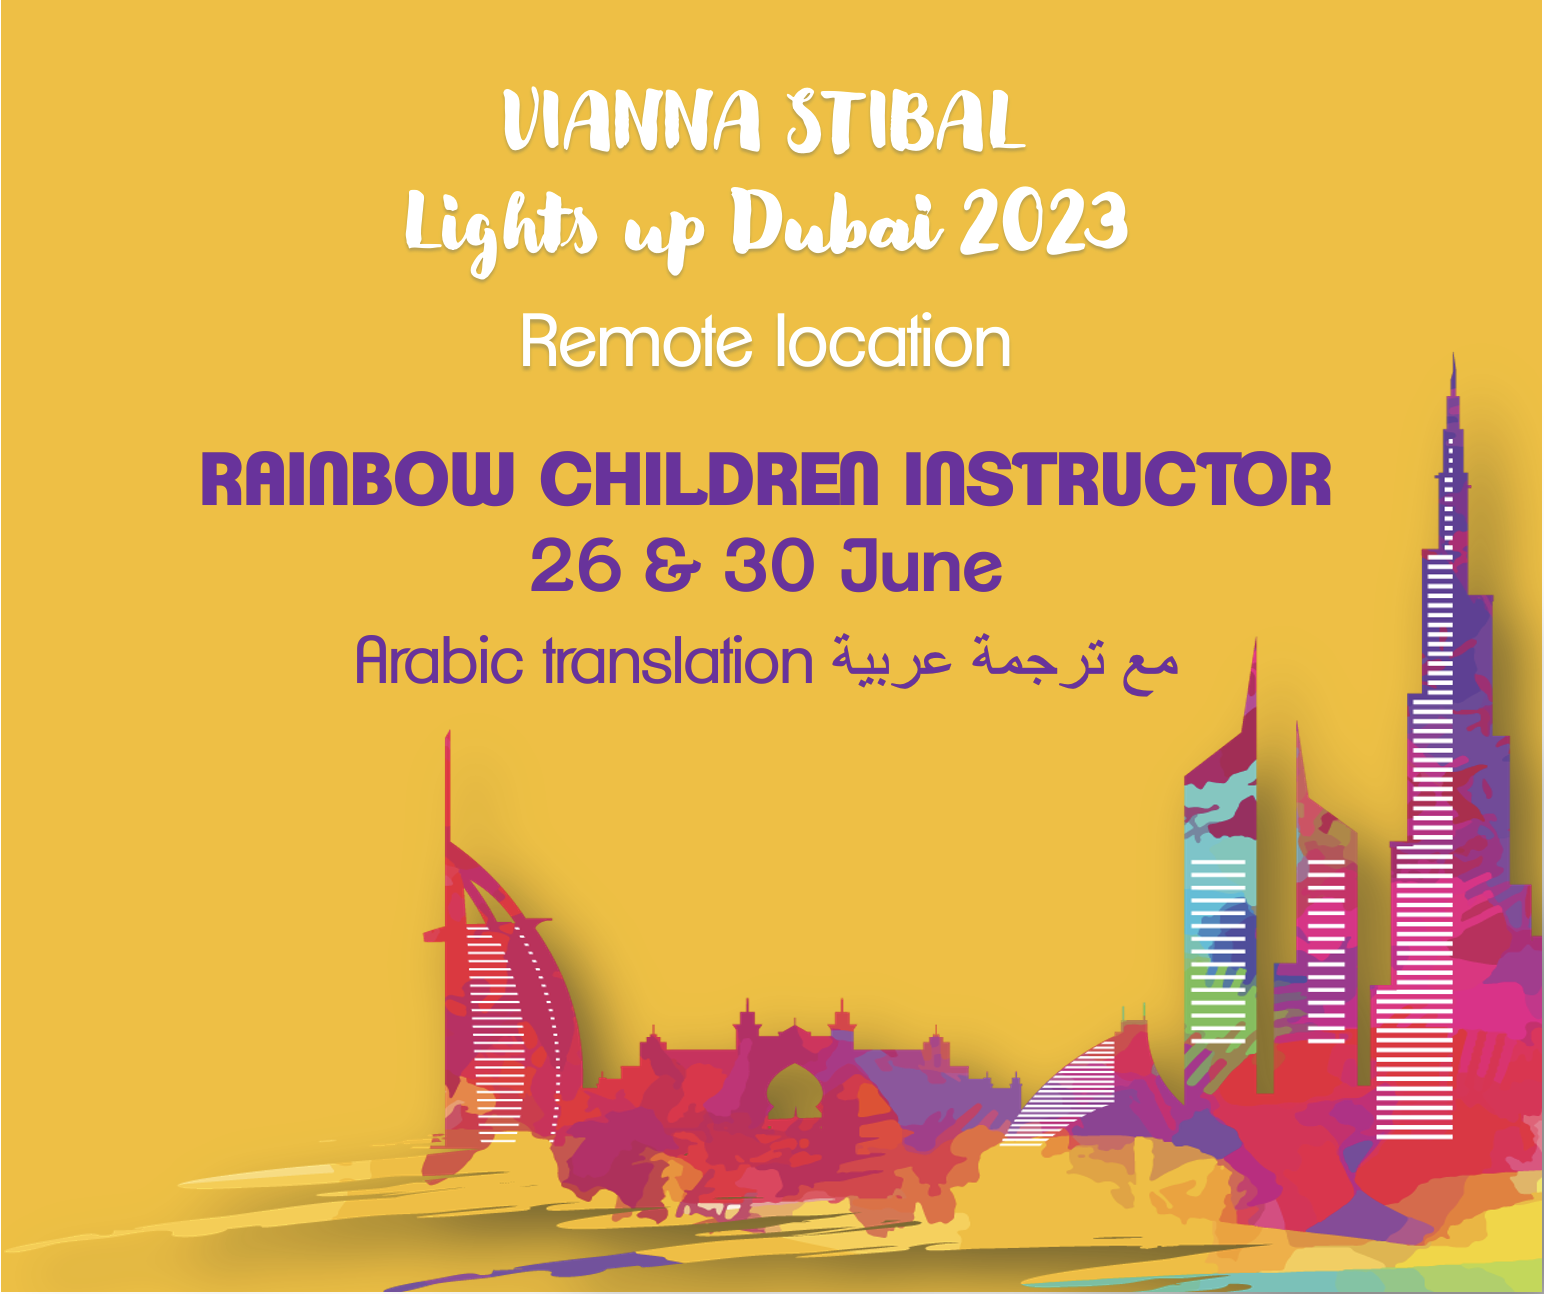 Remote Rainbow Children Instructor